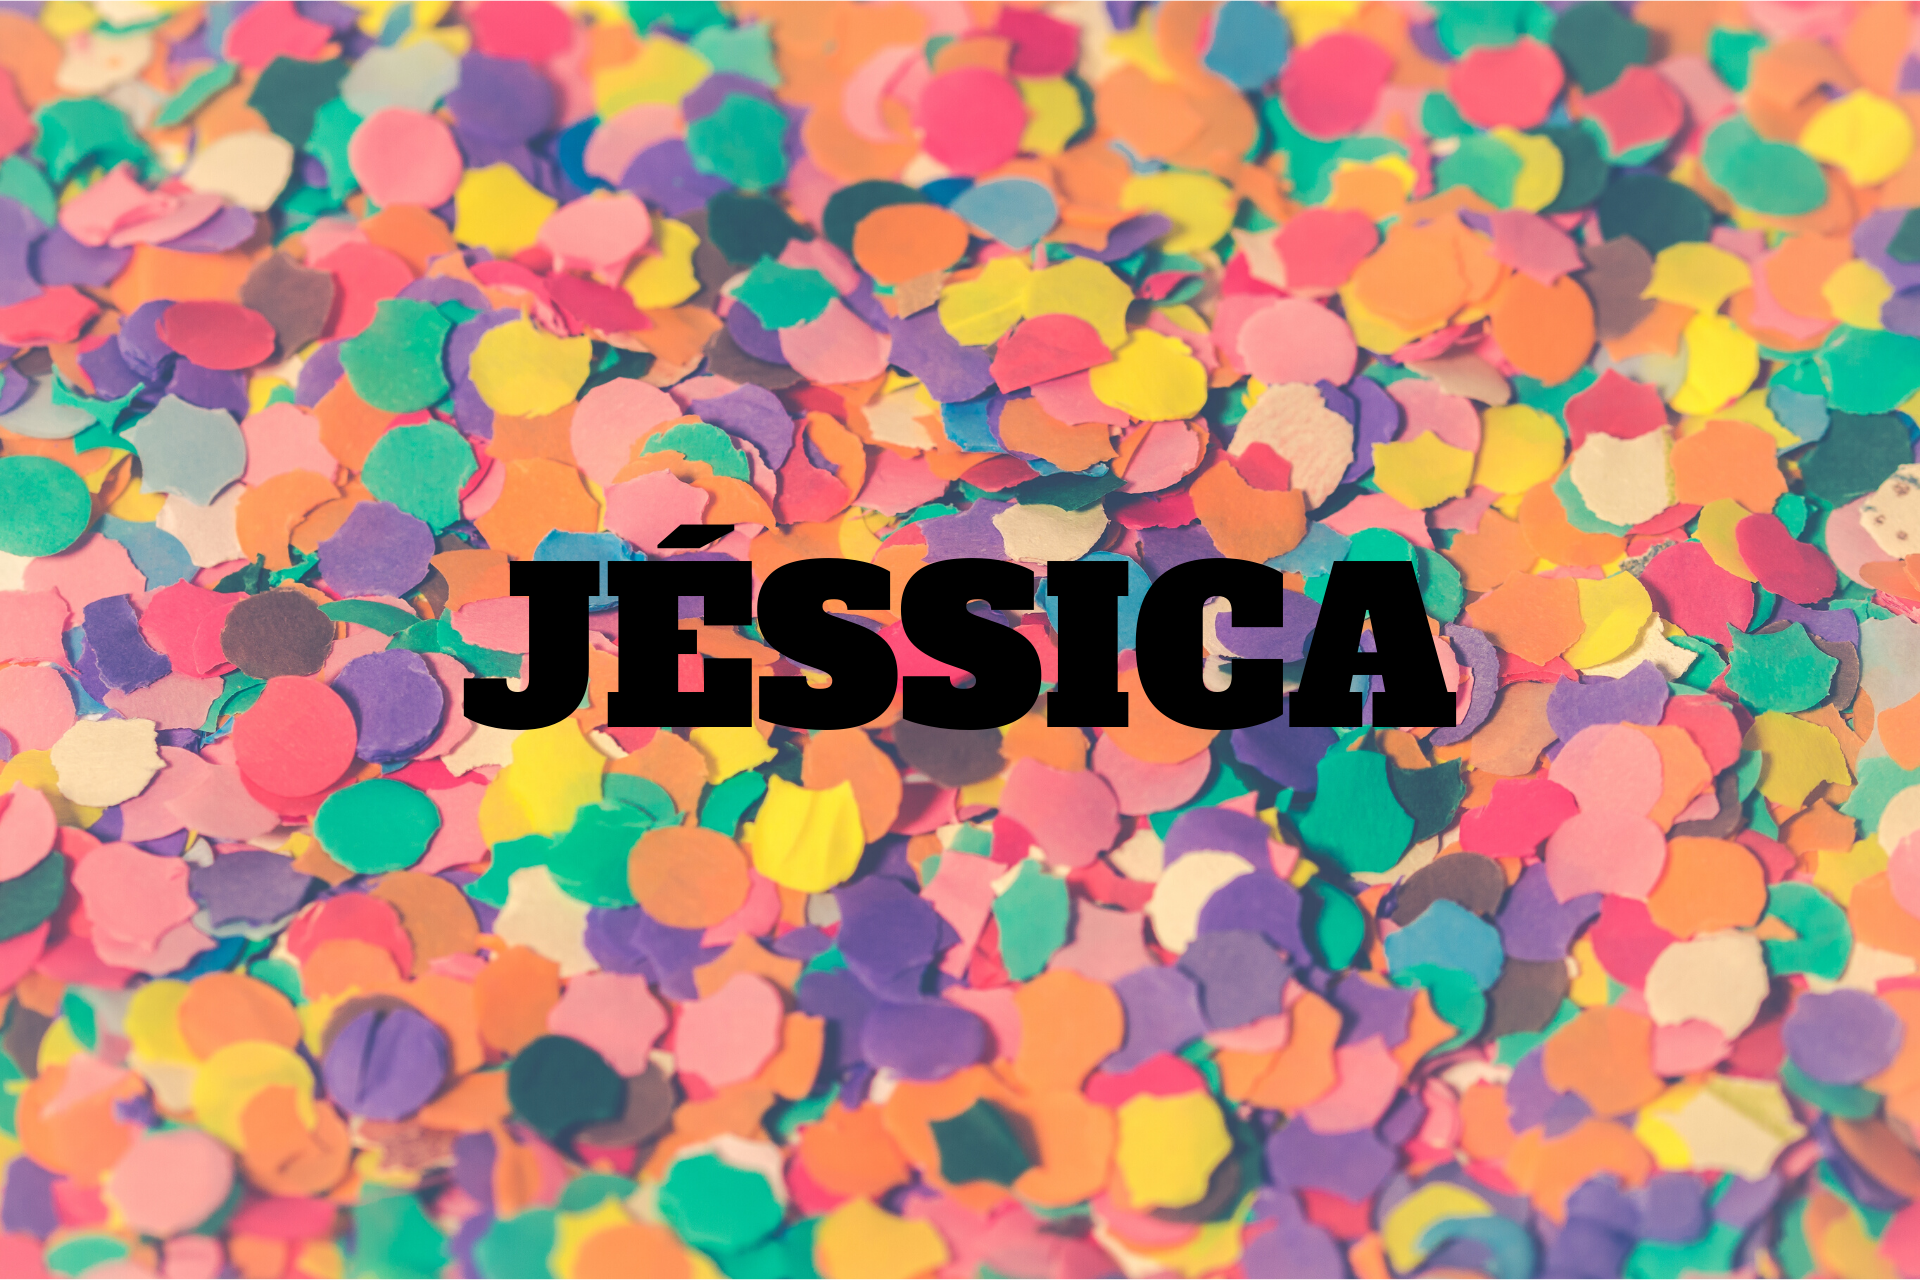  Jessica Betydelse - Namnets ursprung, historia, personlighet och popularitet